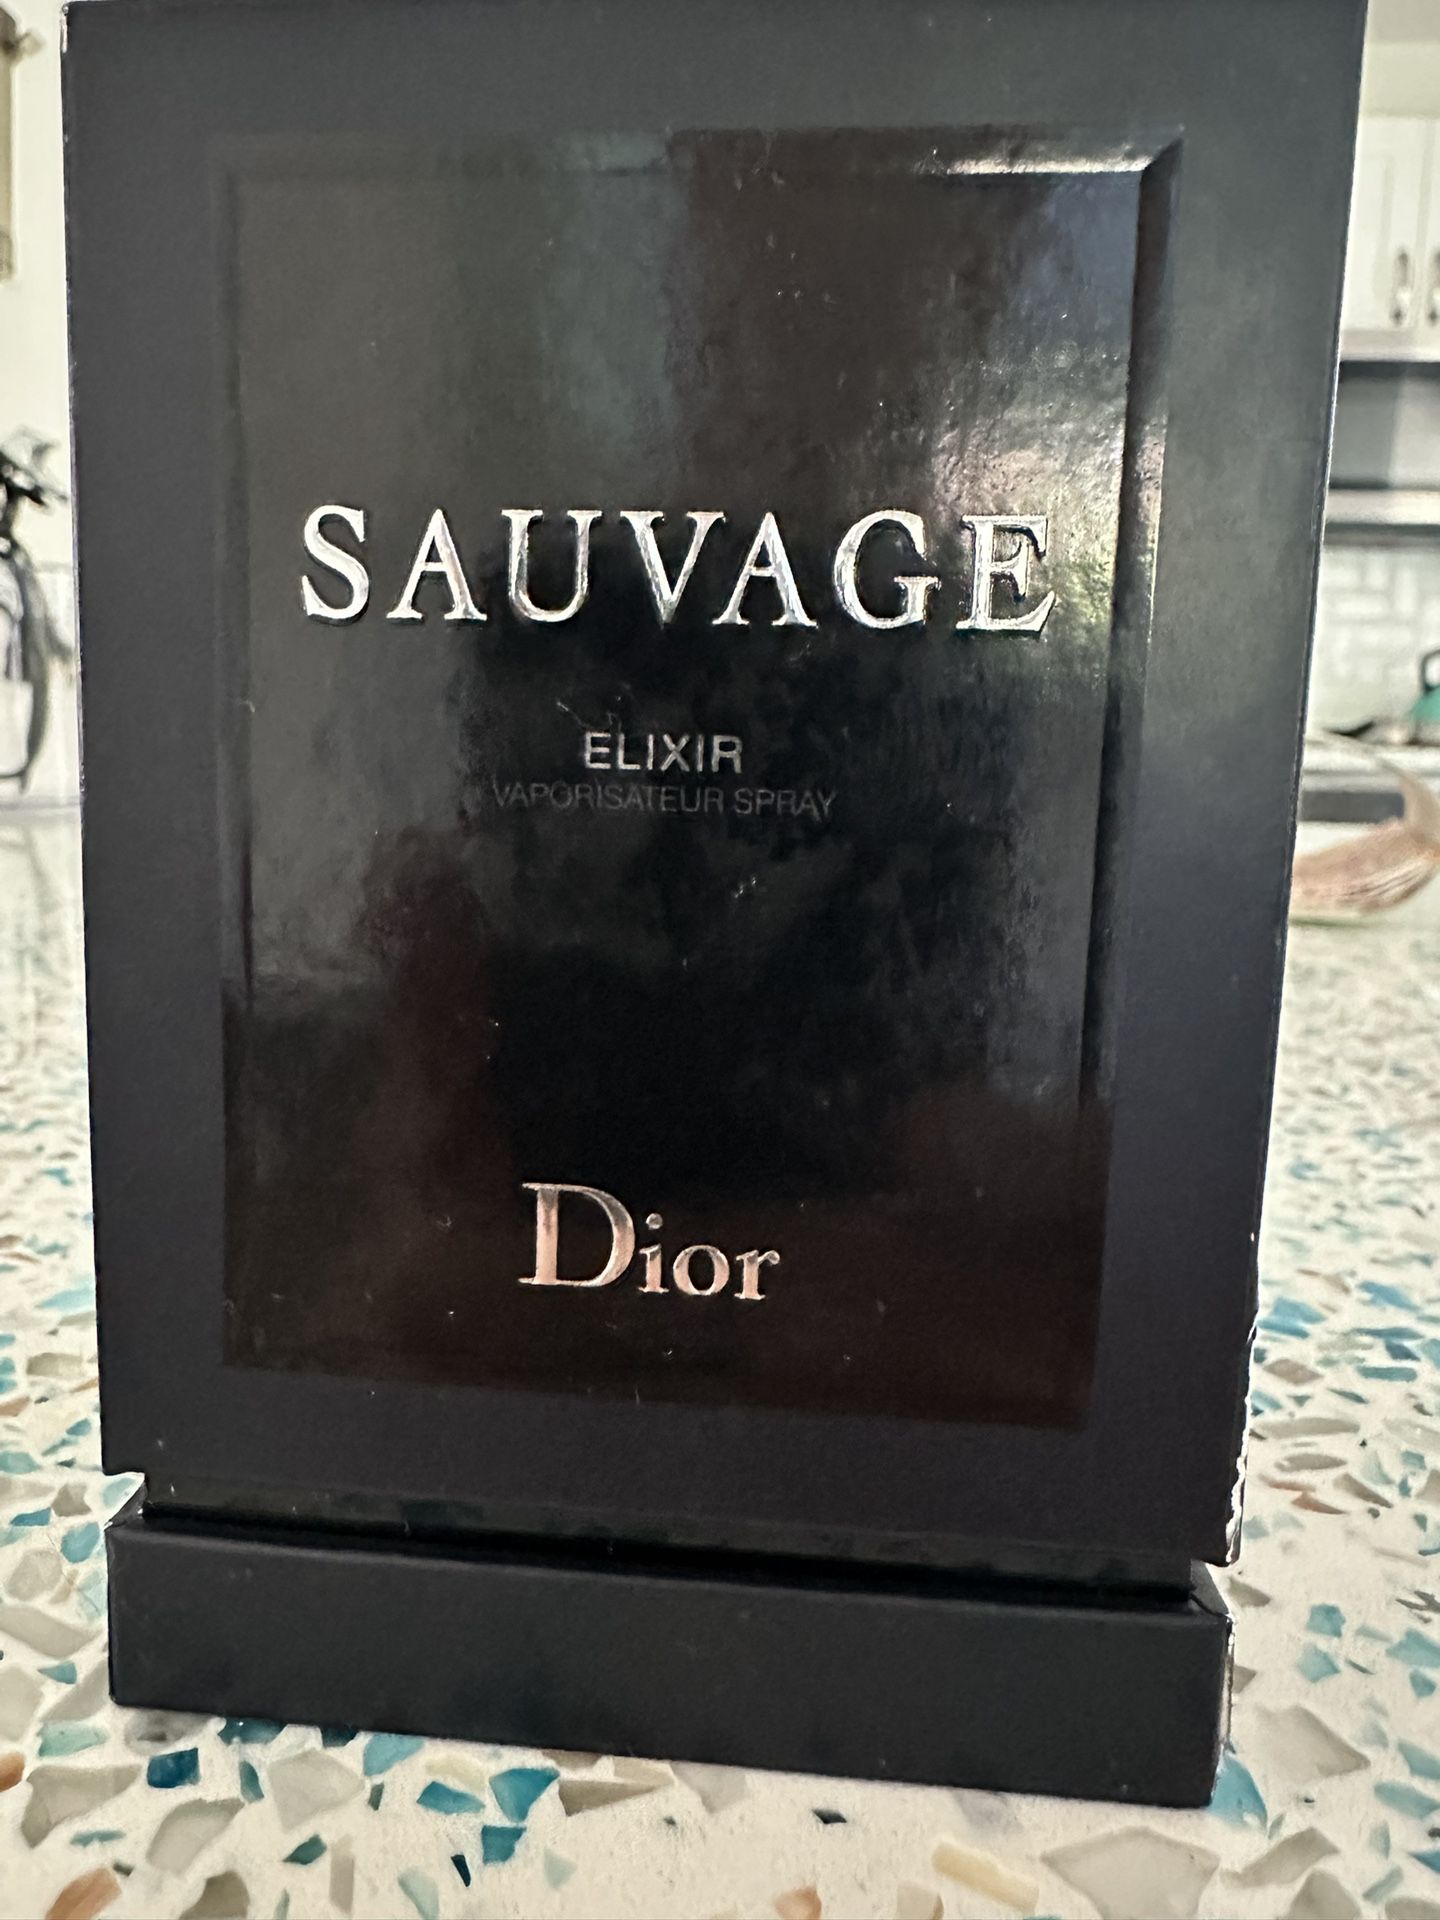 Dior Sauvage Elixir Cologne / Perfume 